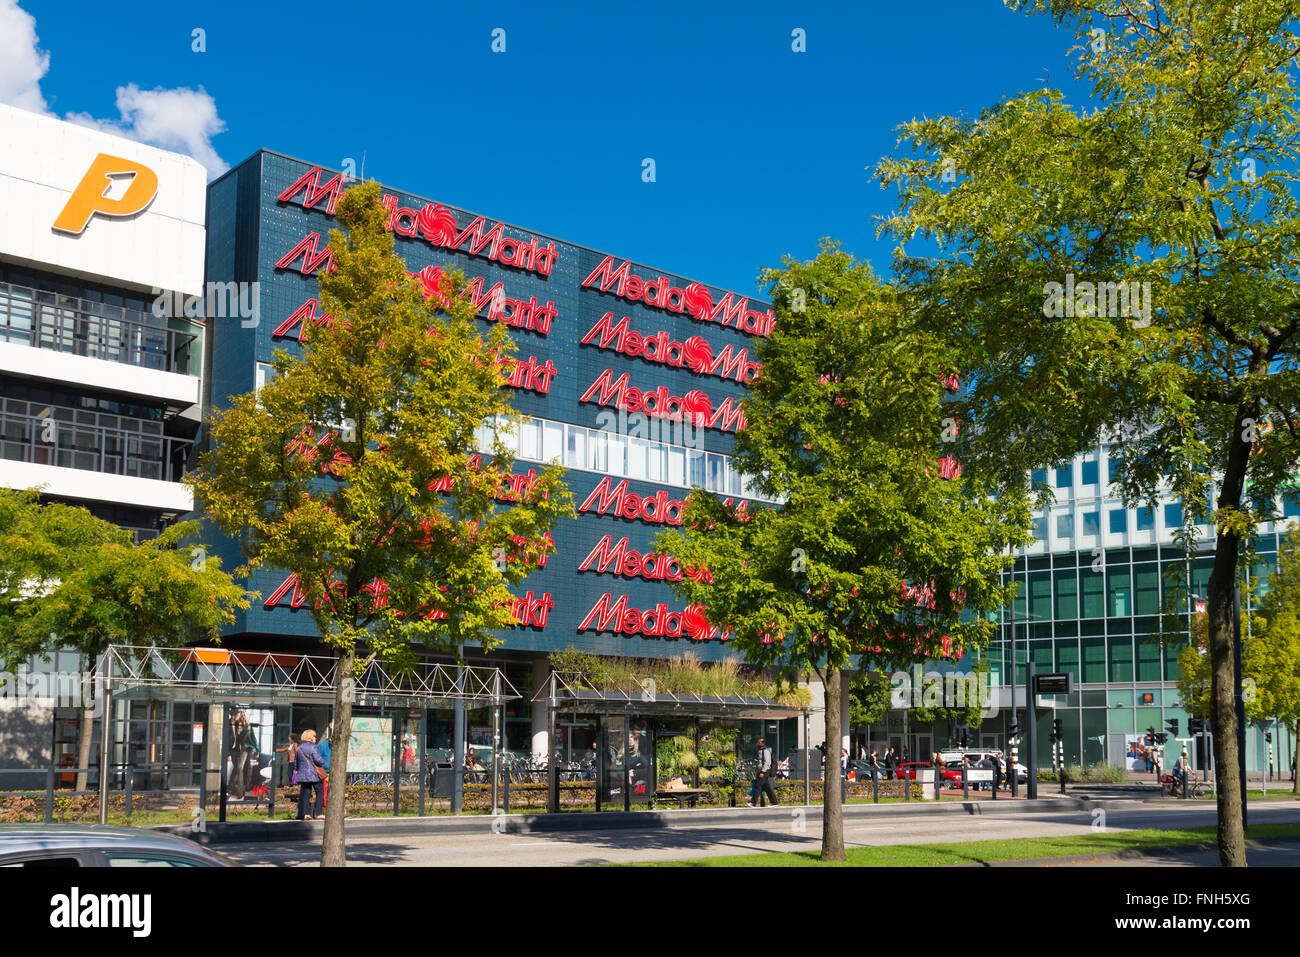 EINDHOVEN, Pays-Bas - le 26 août 2015 : l'extérieur de la Media Markt d'appareils électroniques. Media Markt est une chaîne de distribution allemand th Banque D'Images